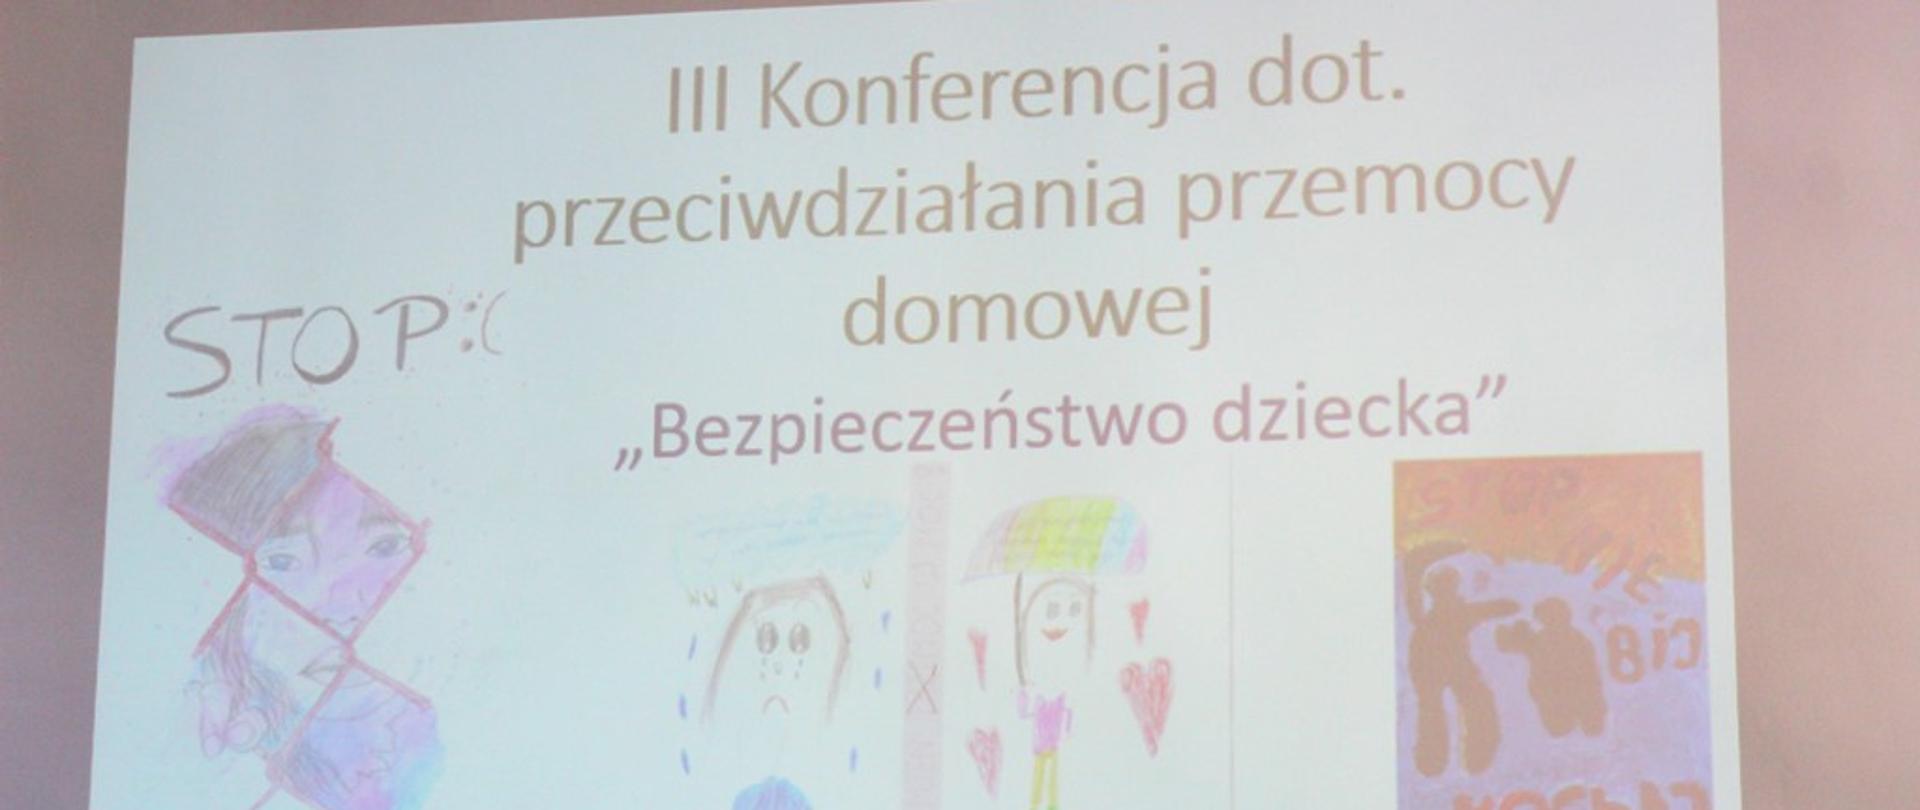 Widok z rzutnika ekranu - tytuł konferencji, obok tytułu trzy rysunki dzieci o tematyce "stop przemocy"